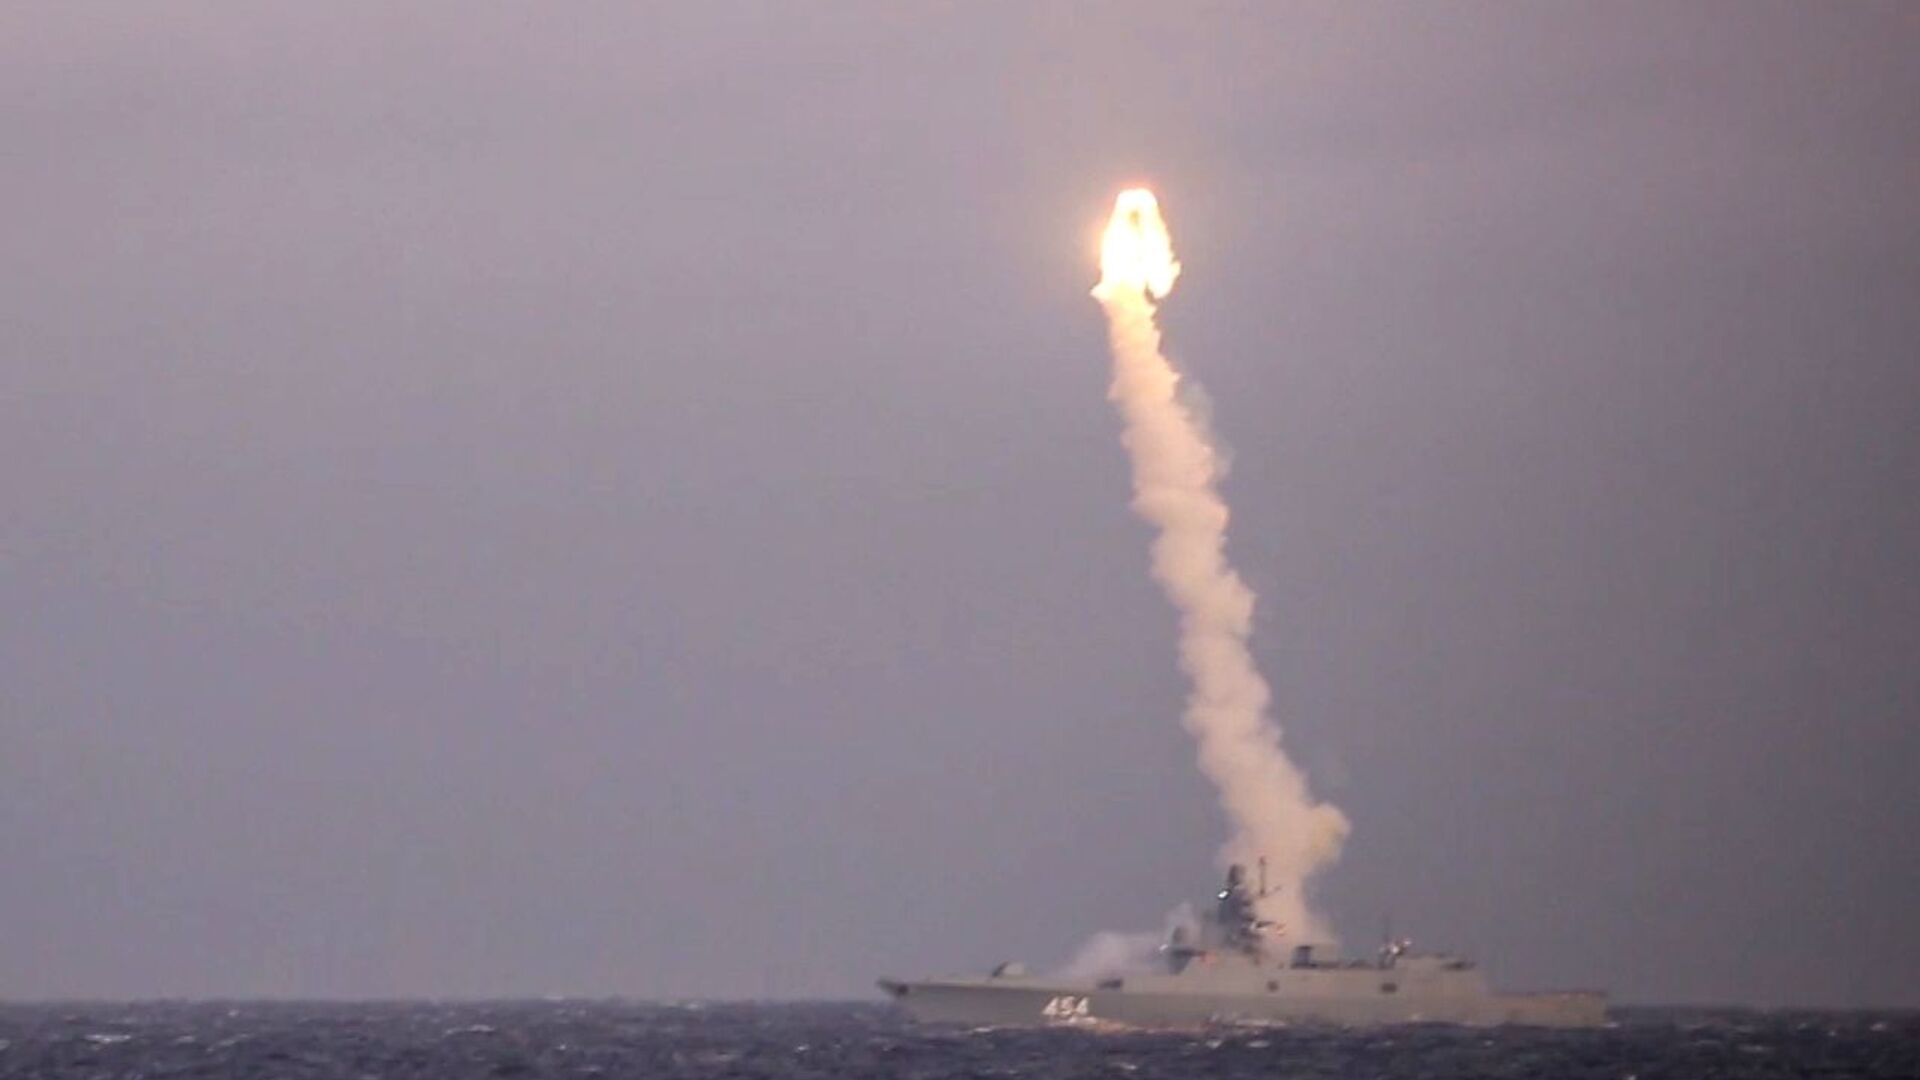 Η Ρωσία ανακοίνωσε τον εξοπλισμό των υποβρυχίων της με υπερ-υπερηχητικούς πυραύλους Zircon – Mεγάλη η απειλή για τις ΗΠΑ